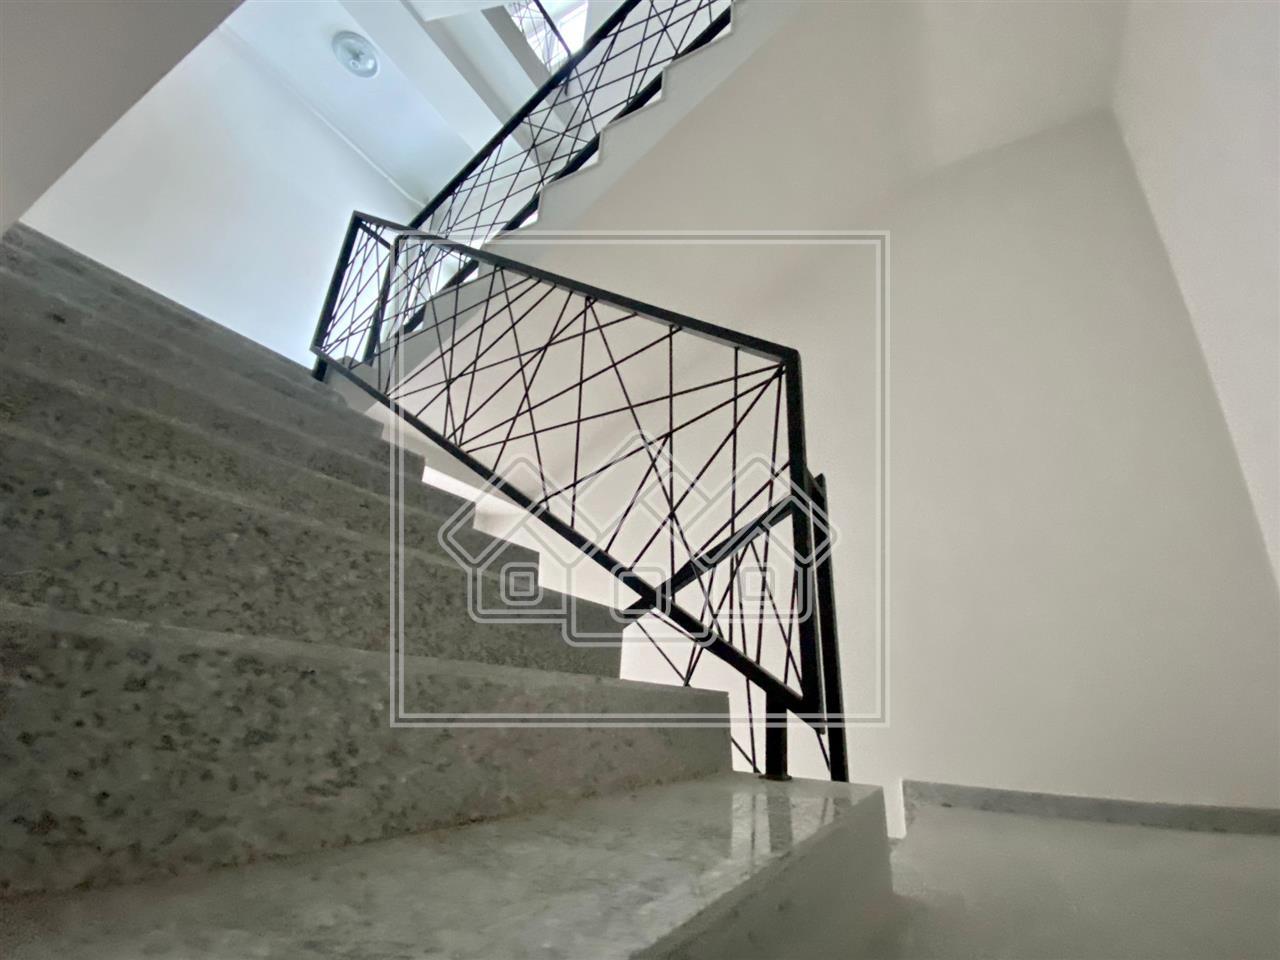 Apartament 2 camere + logie 14.17 mp - concept lux - Vila Donatello